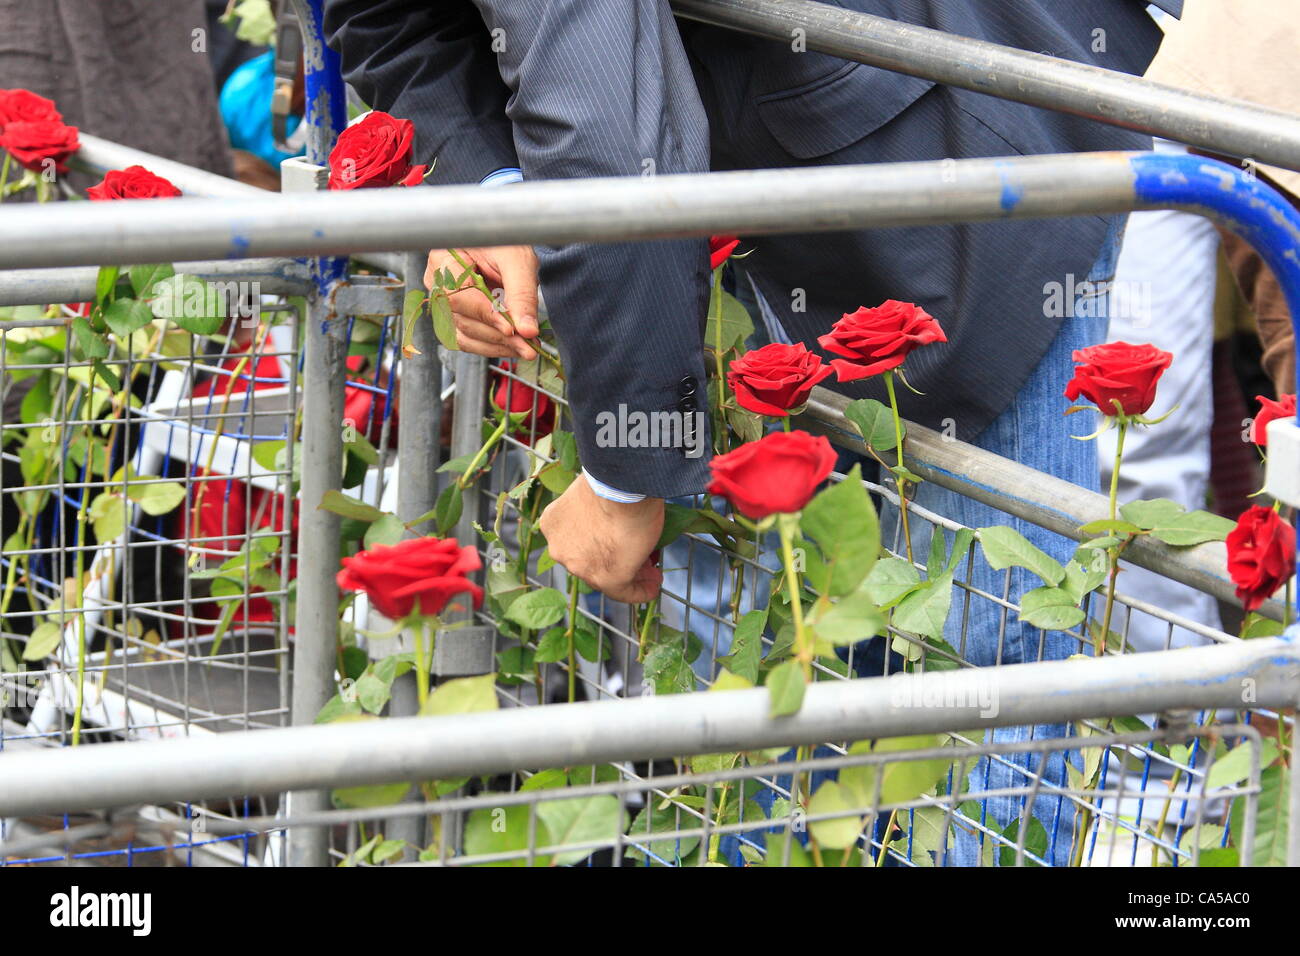 Sonntag, 10. Juni 2012 Journalist Louise Tickle organisiert Protest gegen syrische Botschaft. Eine rote Rose, jedes Kind getötet in den letzten syrischen Gräueltaten zu bedeuten ist fixiert, die Hindernisse bei der syrischen Botschaft in London: Credit: HOT SHOTS / Alamy Live News Stockfoto